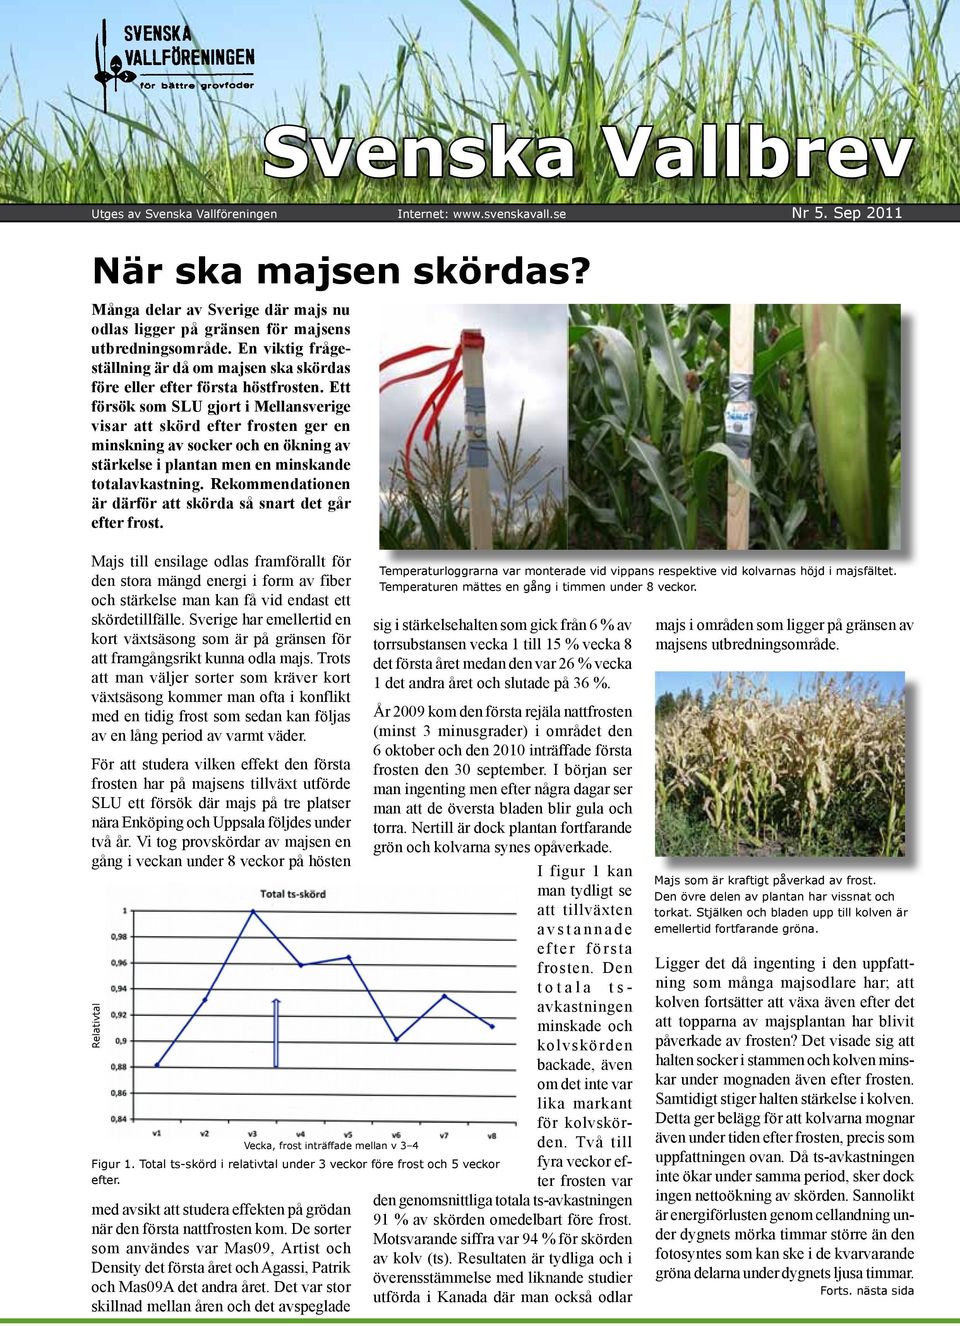 Ett försök som SLU gjort i Mellansverige visar att skörd efter frosten ger en minskning av socker och en ökning av stärkelse i plantan men en minskande totalavkastning.